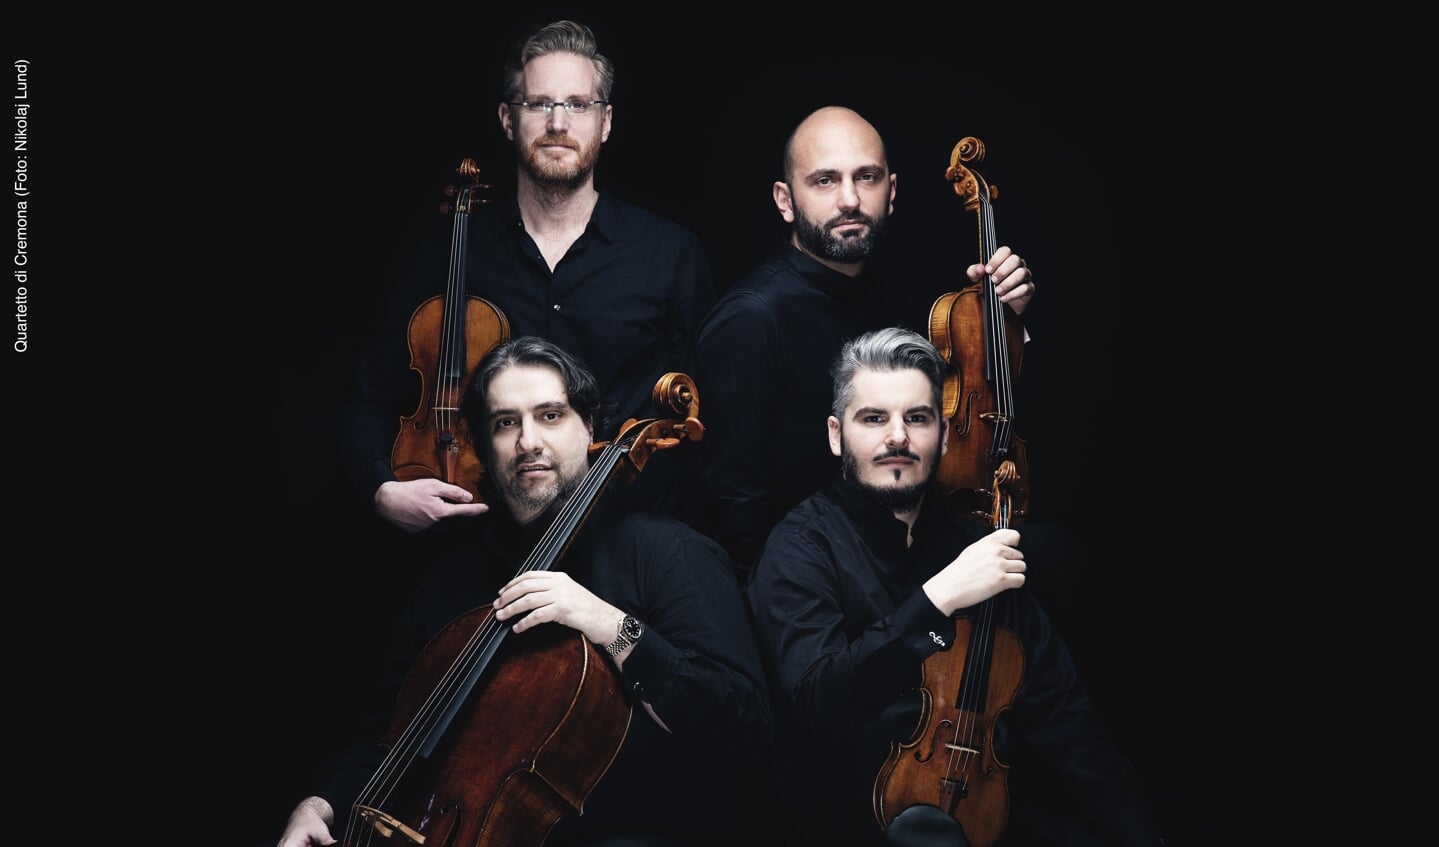 Quartetto di Cremona speelt op 8 oktober zonovergoten muziek uit Italië en Schuberts meeslepende strijkkwartet 'Rosamunde'.